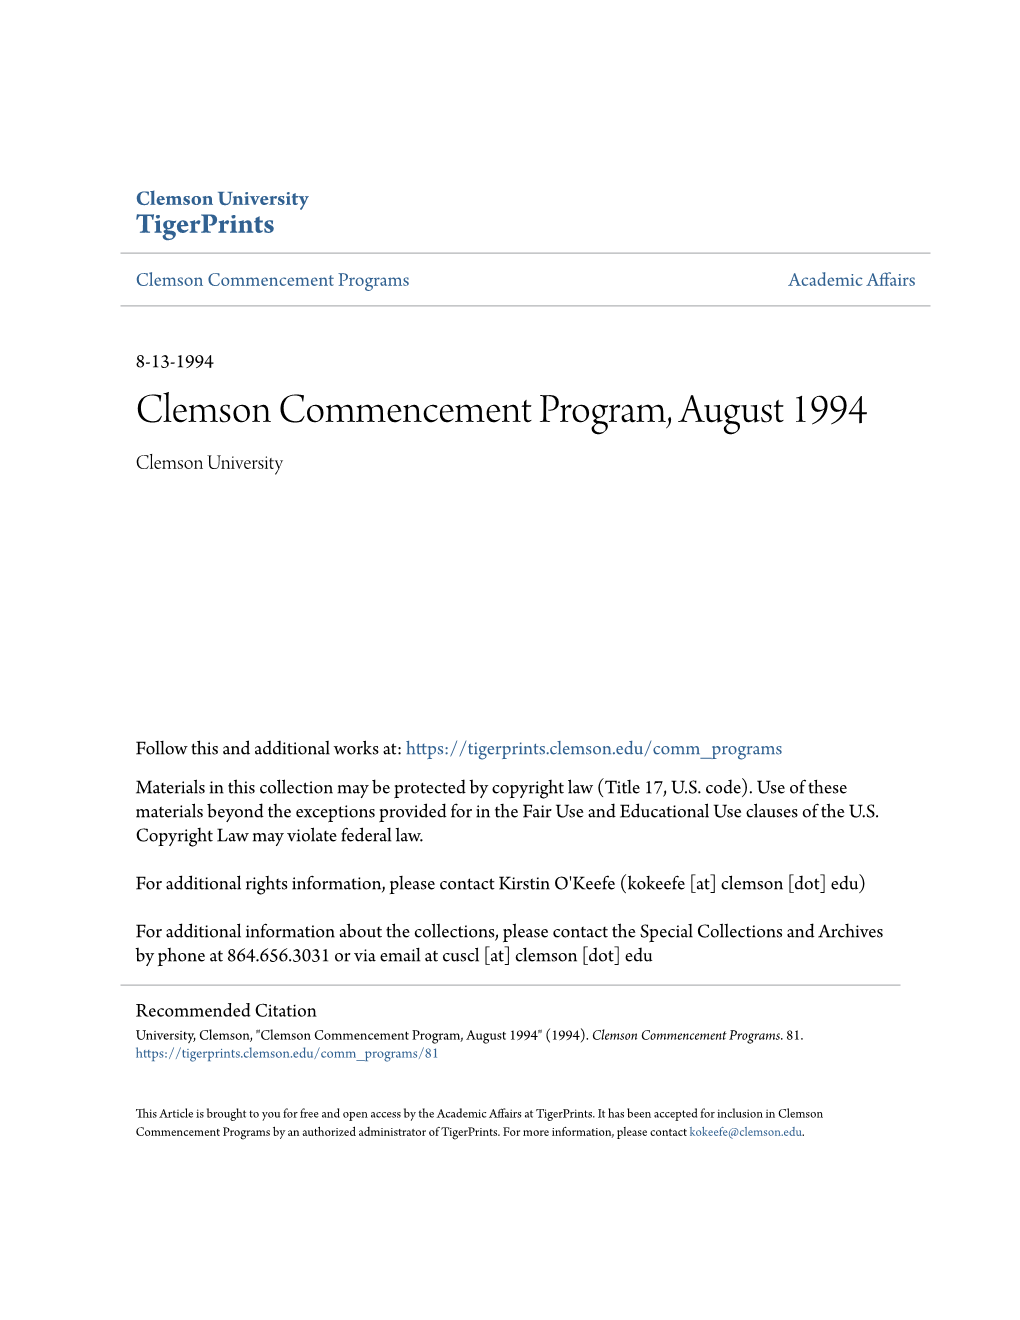 Clemson Commencement Program, August 1994 Clemson University